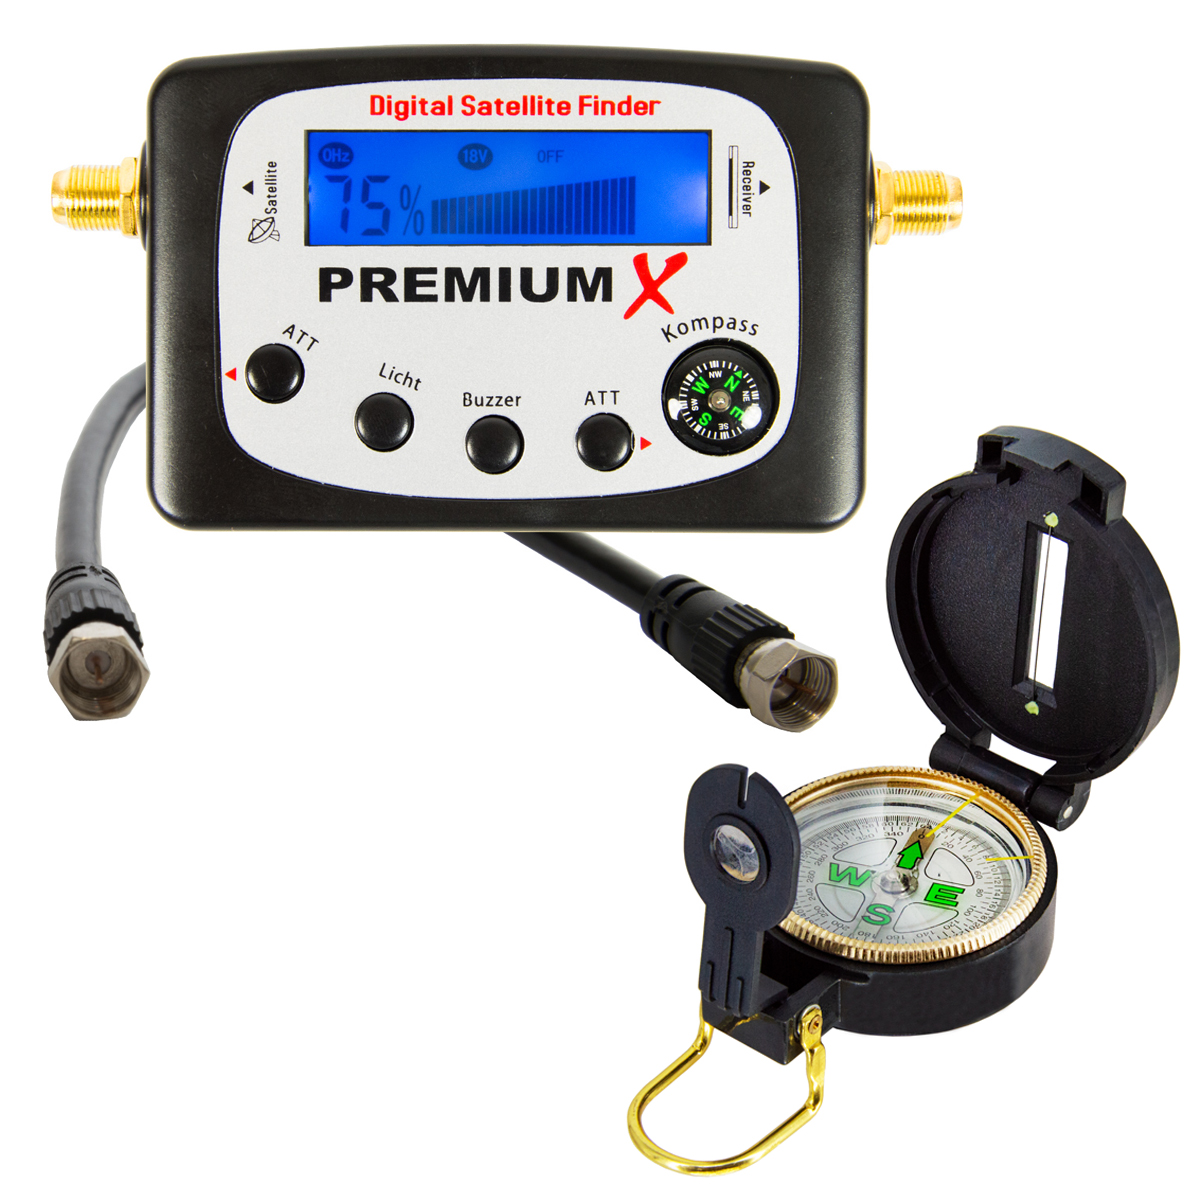 PREMIUMX Satellitenfinder Kompass Anlage Sat Satellitenfinder Satfinder Messgerät Sat-TV-Signalfinder für